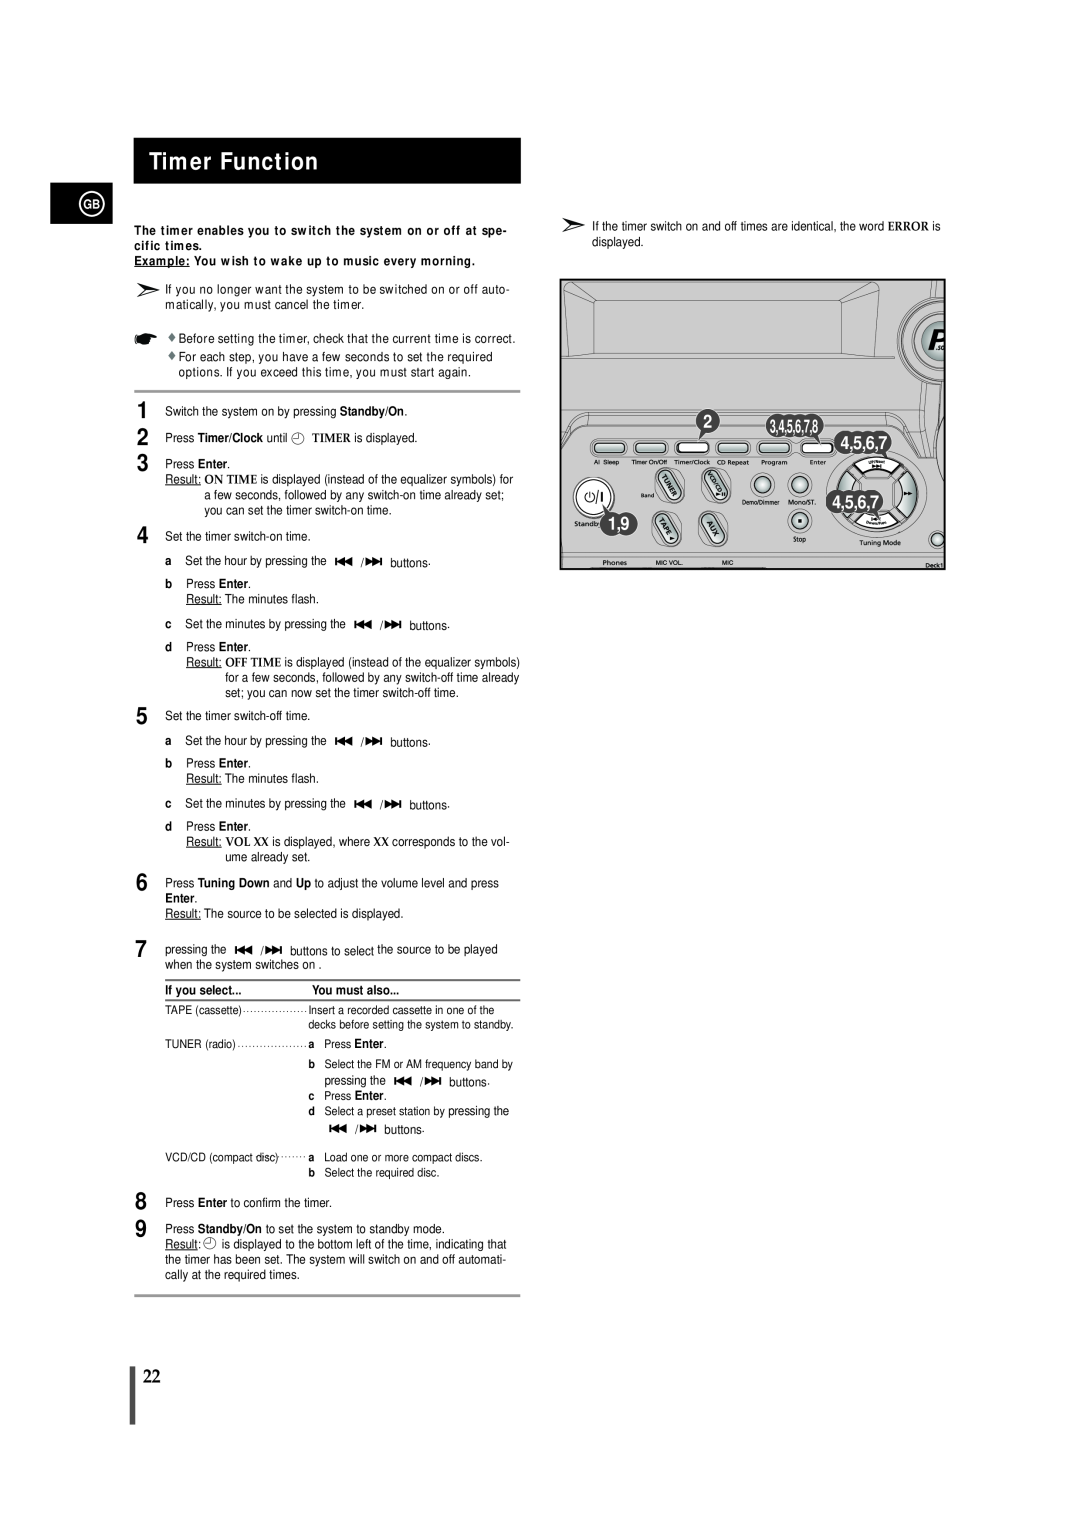 Samsung MAX-VB450 instruction manual Timer Function, 3,4,5,6,7,8 